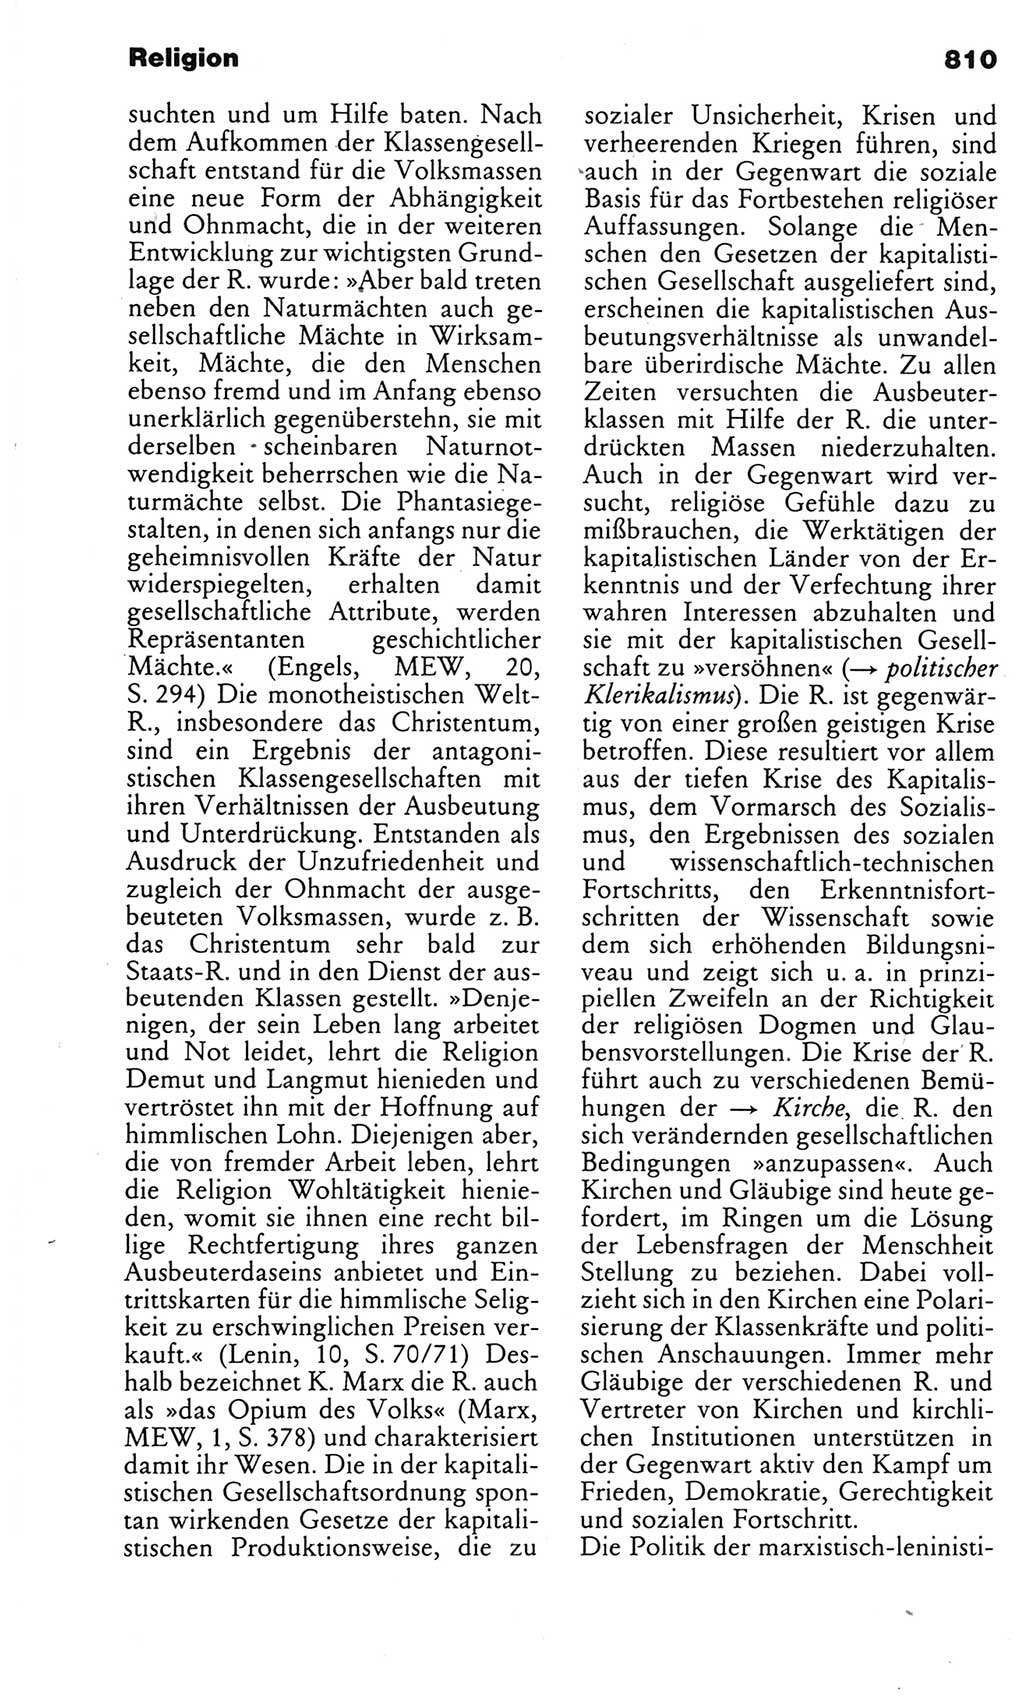 Kleines politisches Wörterbuch [Deutsche Demokratische Republik (DDR)] 1983, Seite 810 (Kl. pol. Wb. DDR 1983, S. 810)